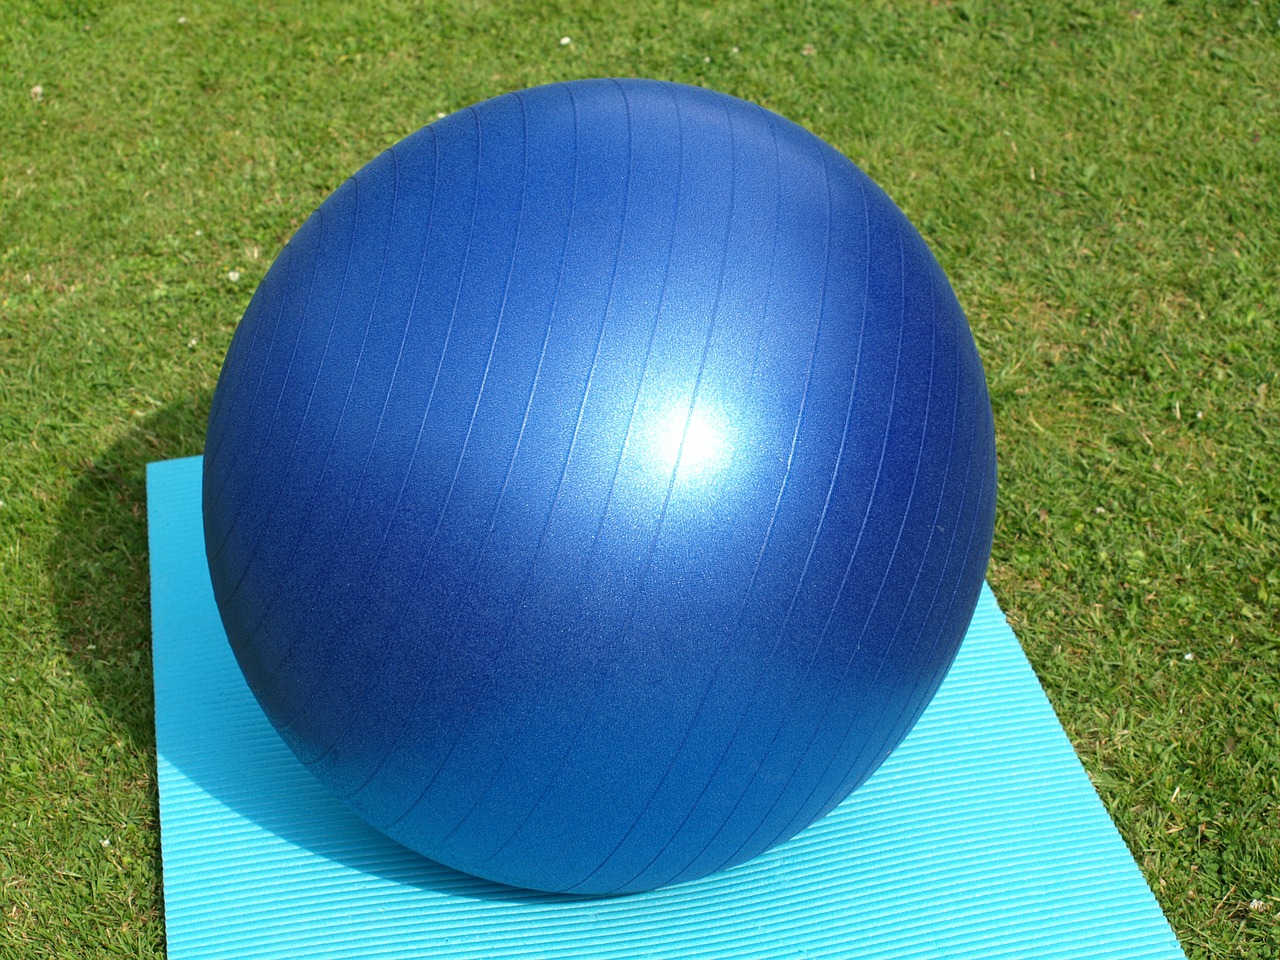 exercise ball large blue free photo